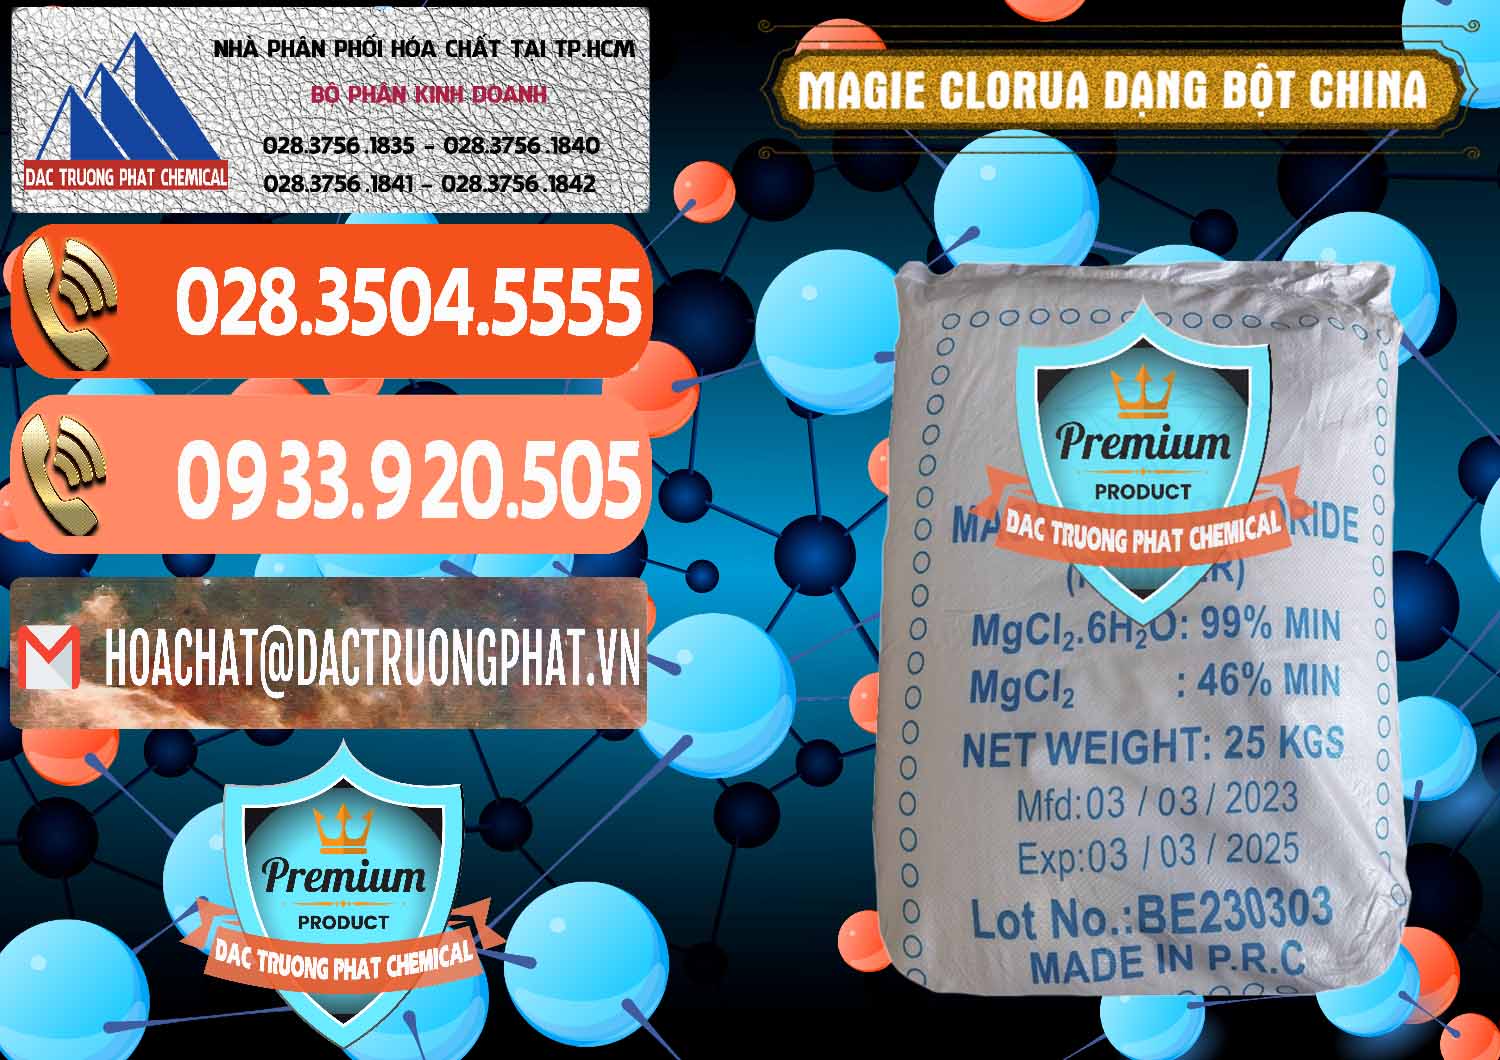 Cty chuyên bán ( cung cấp ) Magie Clorua – MGCL2 96% Dạng Bột Logo Kim Cương Trung Quốc China - 0387 - Công ty cung cấp & phân phối hóa chất tại TP.HCM - hoachatmientay.com